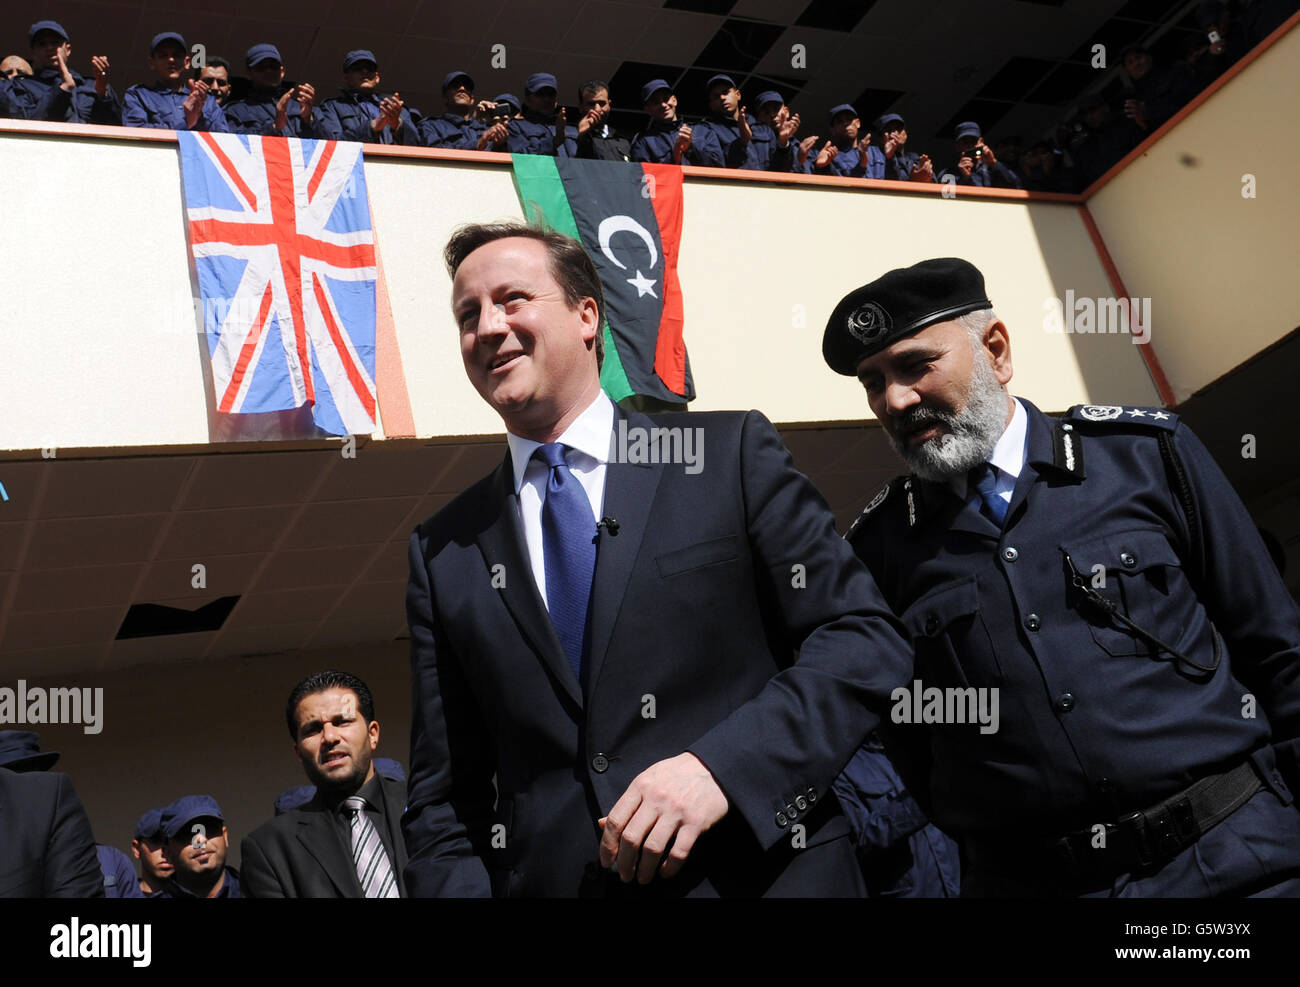 Le Premier ministre David Cameron rencontre des recrues dans un collège de formation de la police à Tripoli, en Libye. Banque D'Images